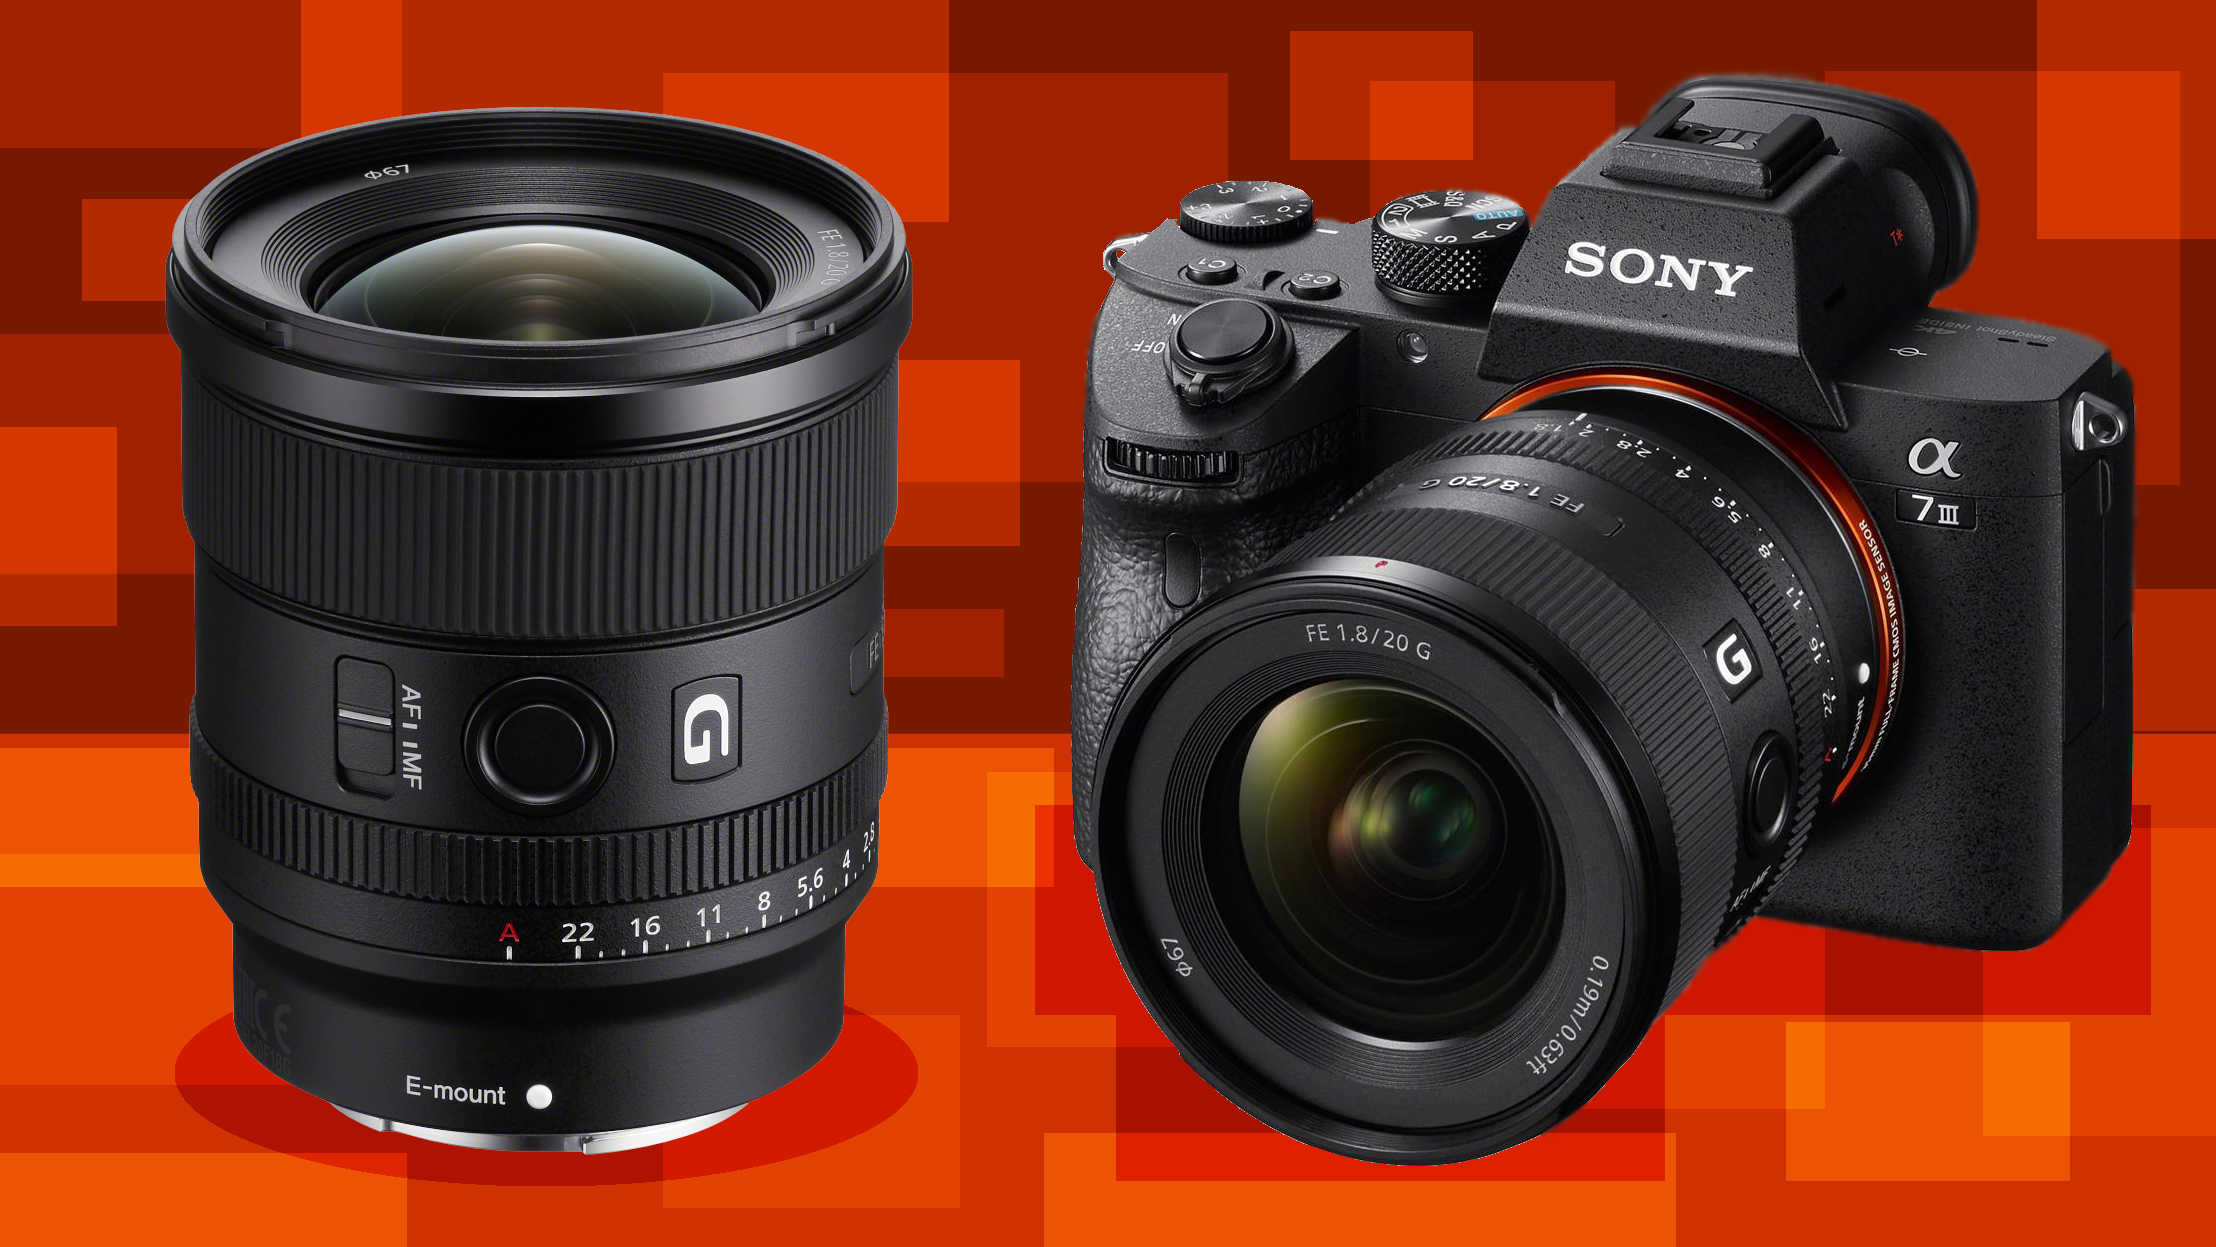 Sony Announces Full-Frame 20mm f/1.8 G Prime Lens - Light And Matter